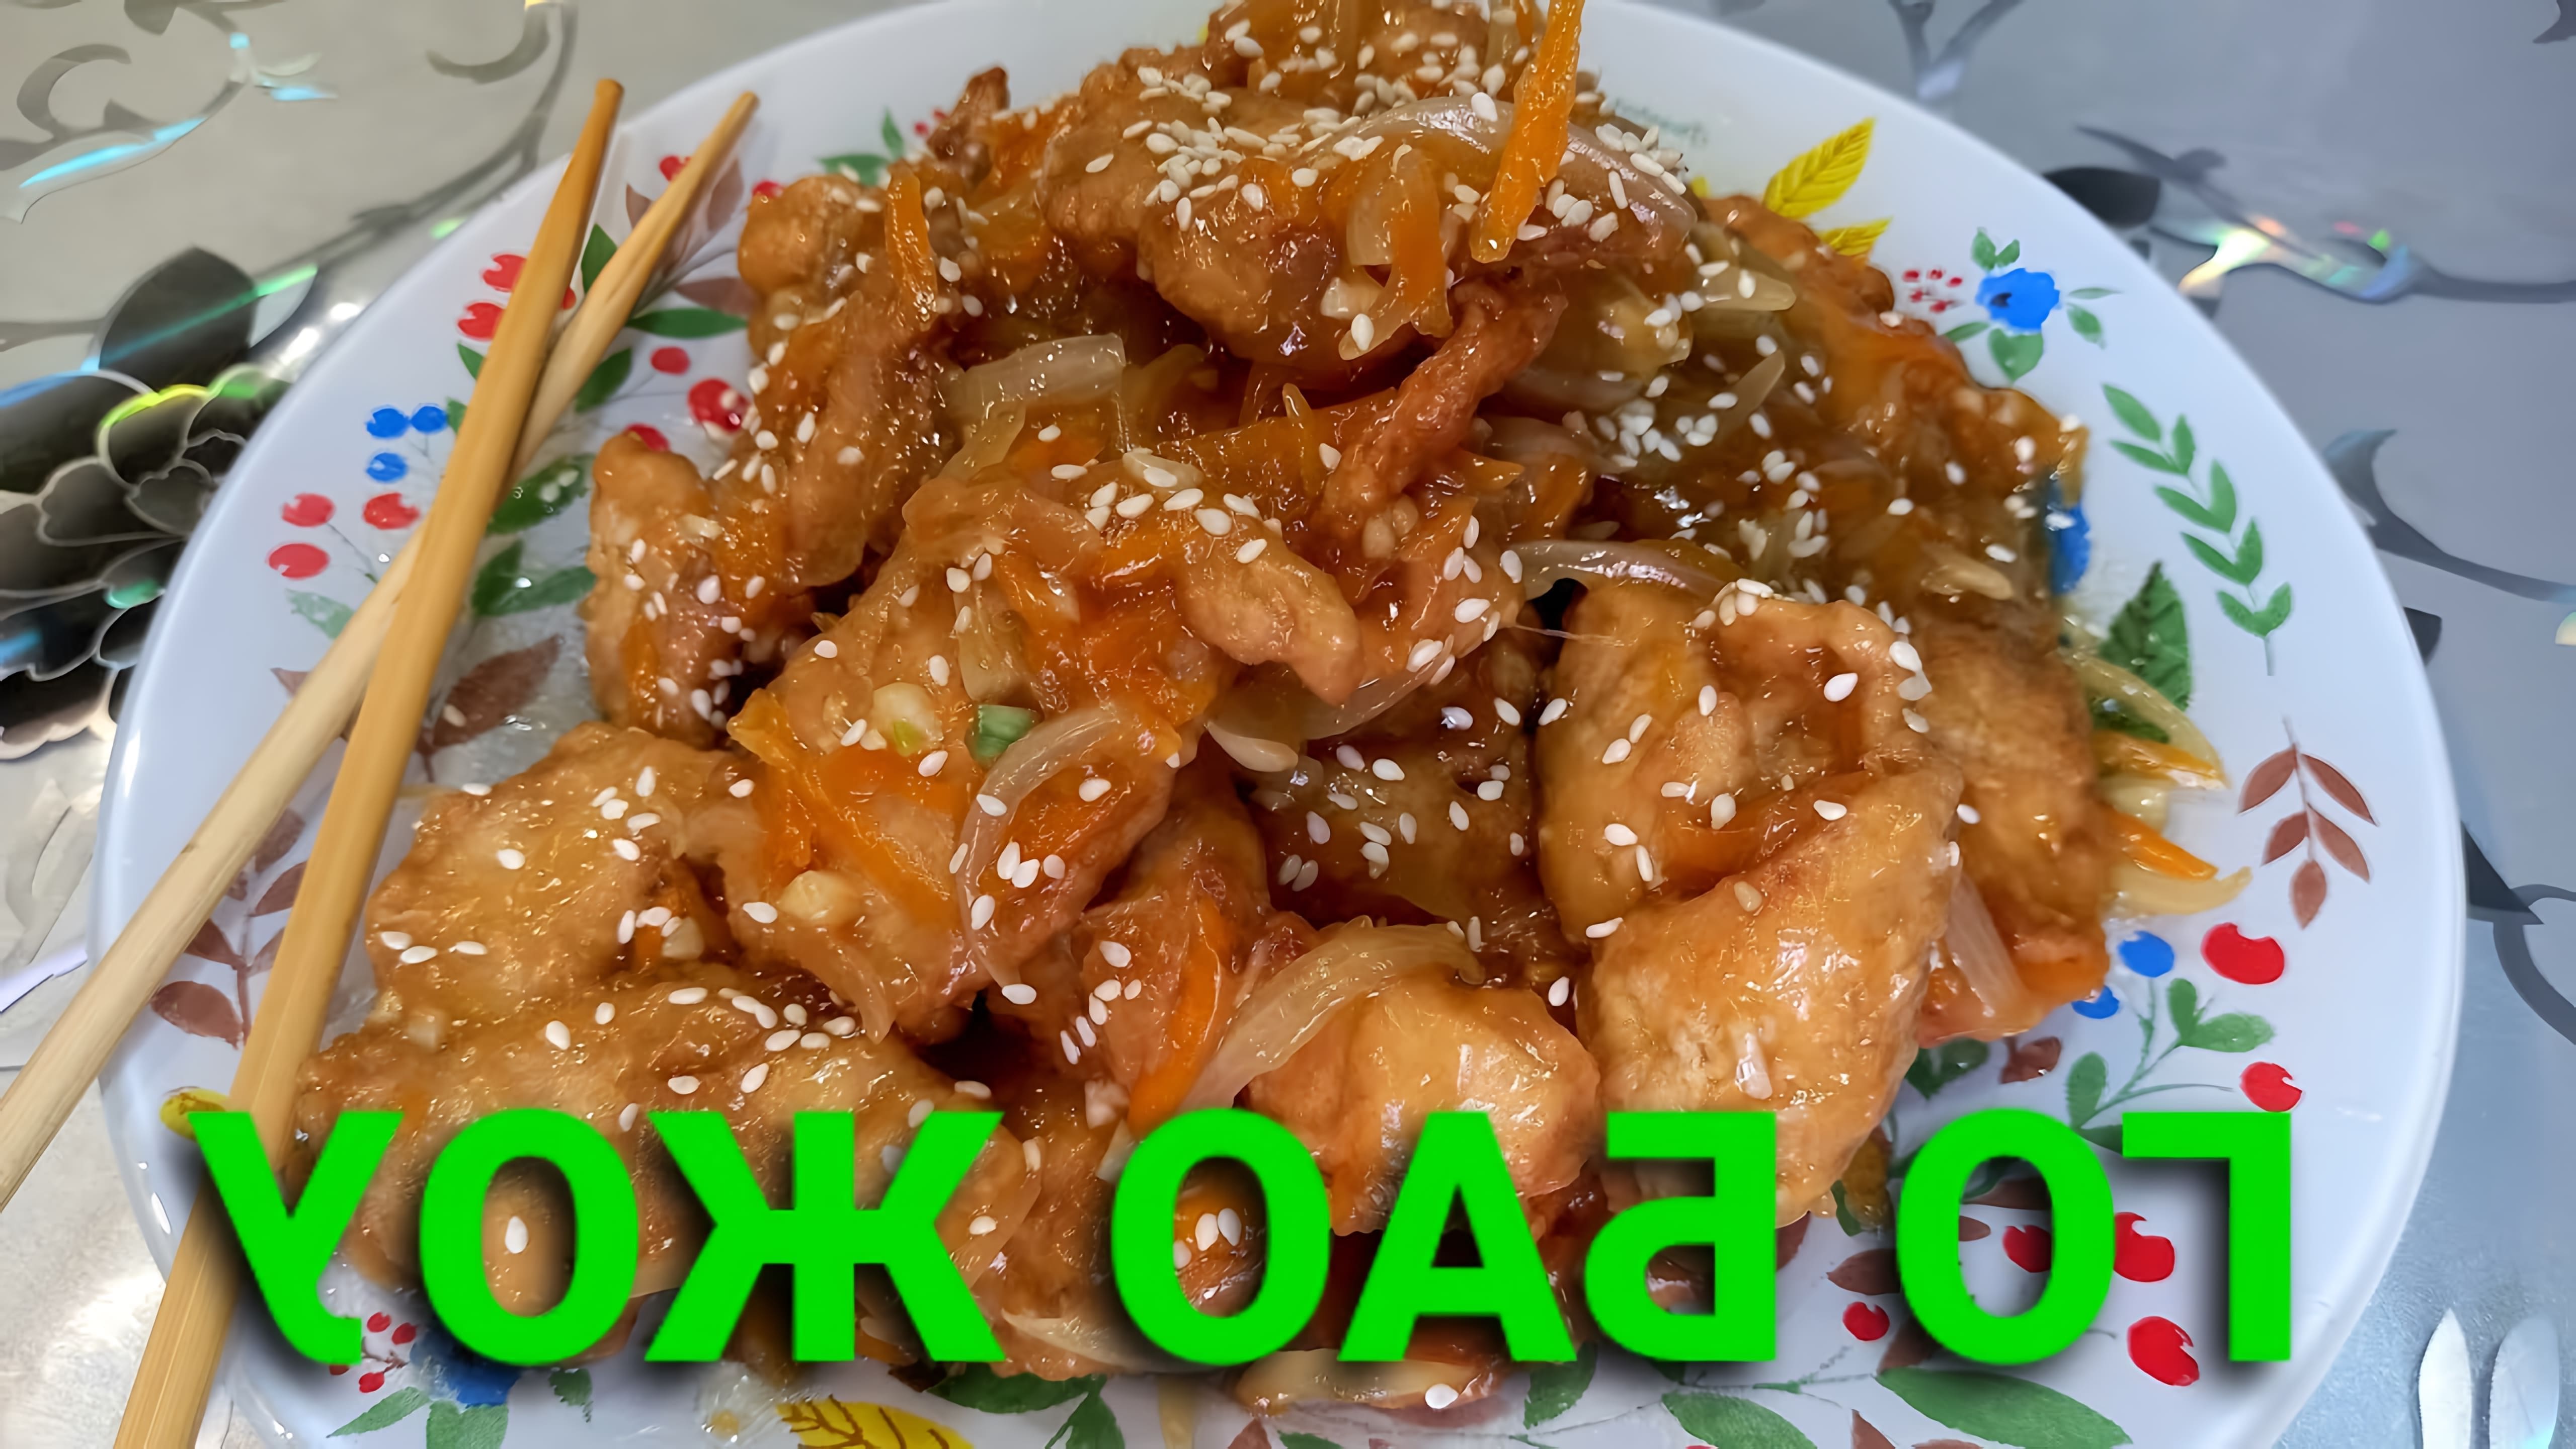 В этом видео демонстрируется процесс приготовления блюда "Губа джоуи" - простого, но вкусного блюда, которое можно приготовить дома